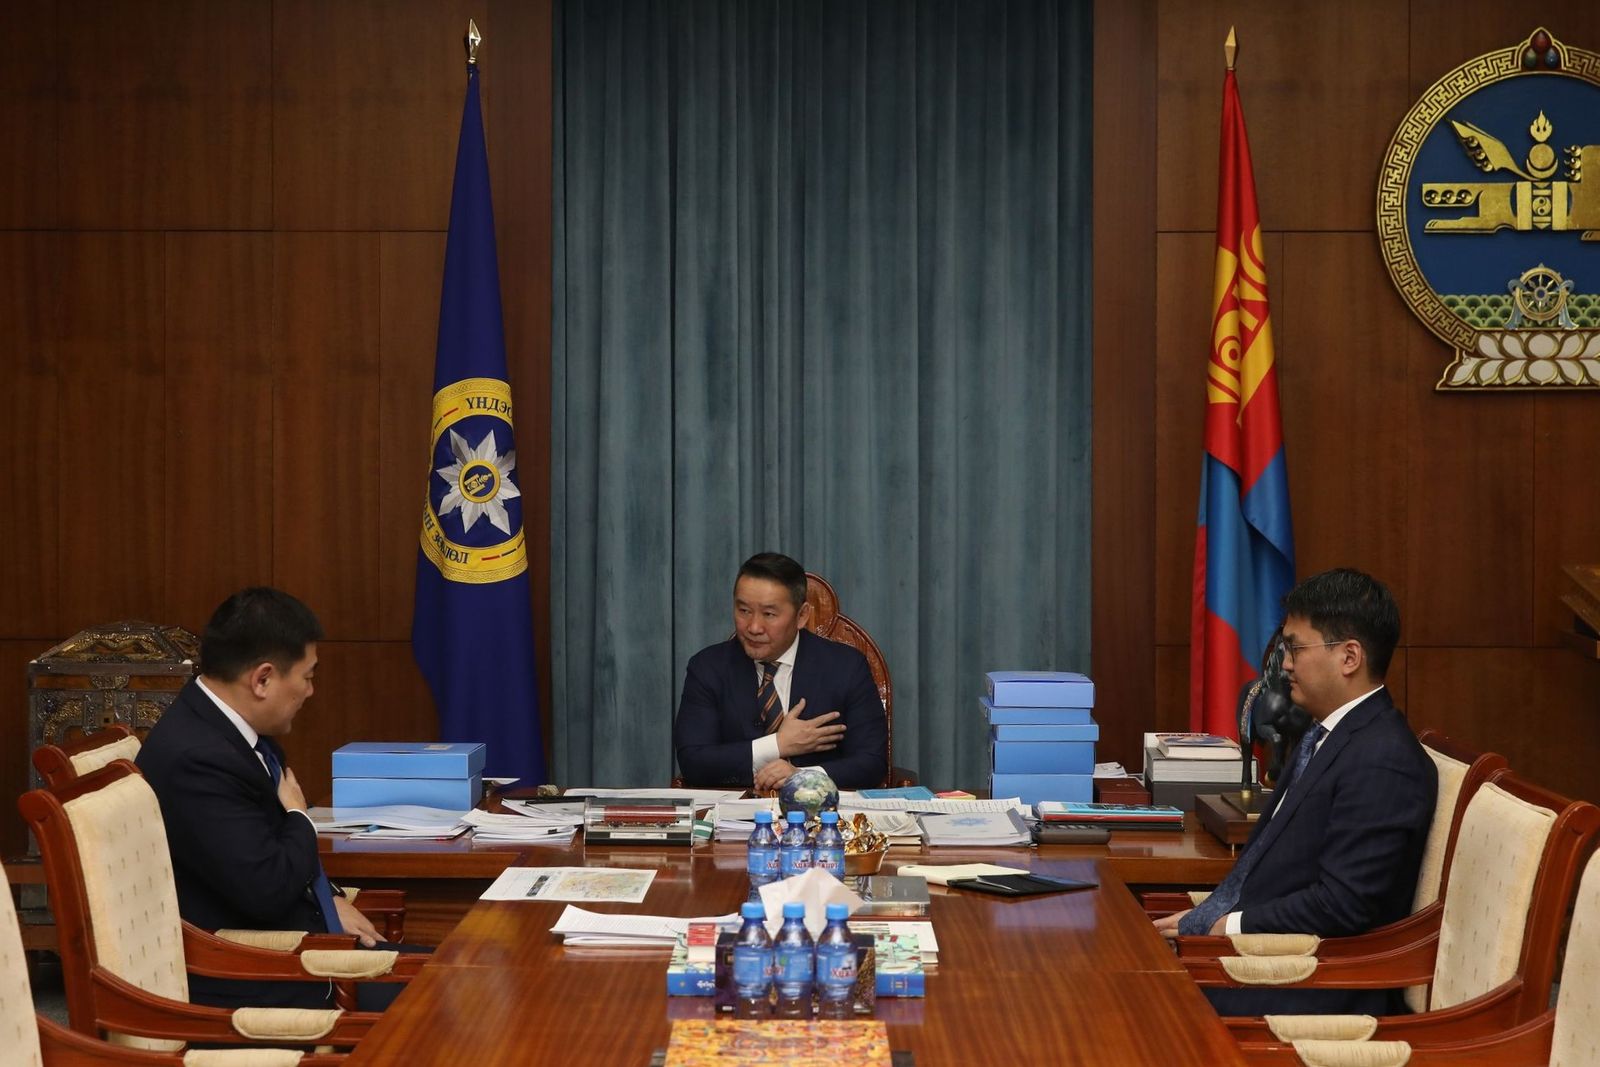 Kh.Battulga 대통령, 몽골 정부가 튼튼하고 국민이 건강할 수 있도록 함께 노력해야.jpg